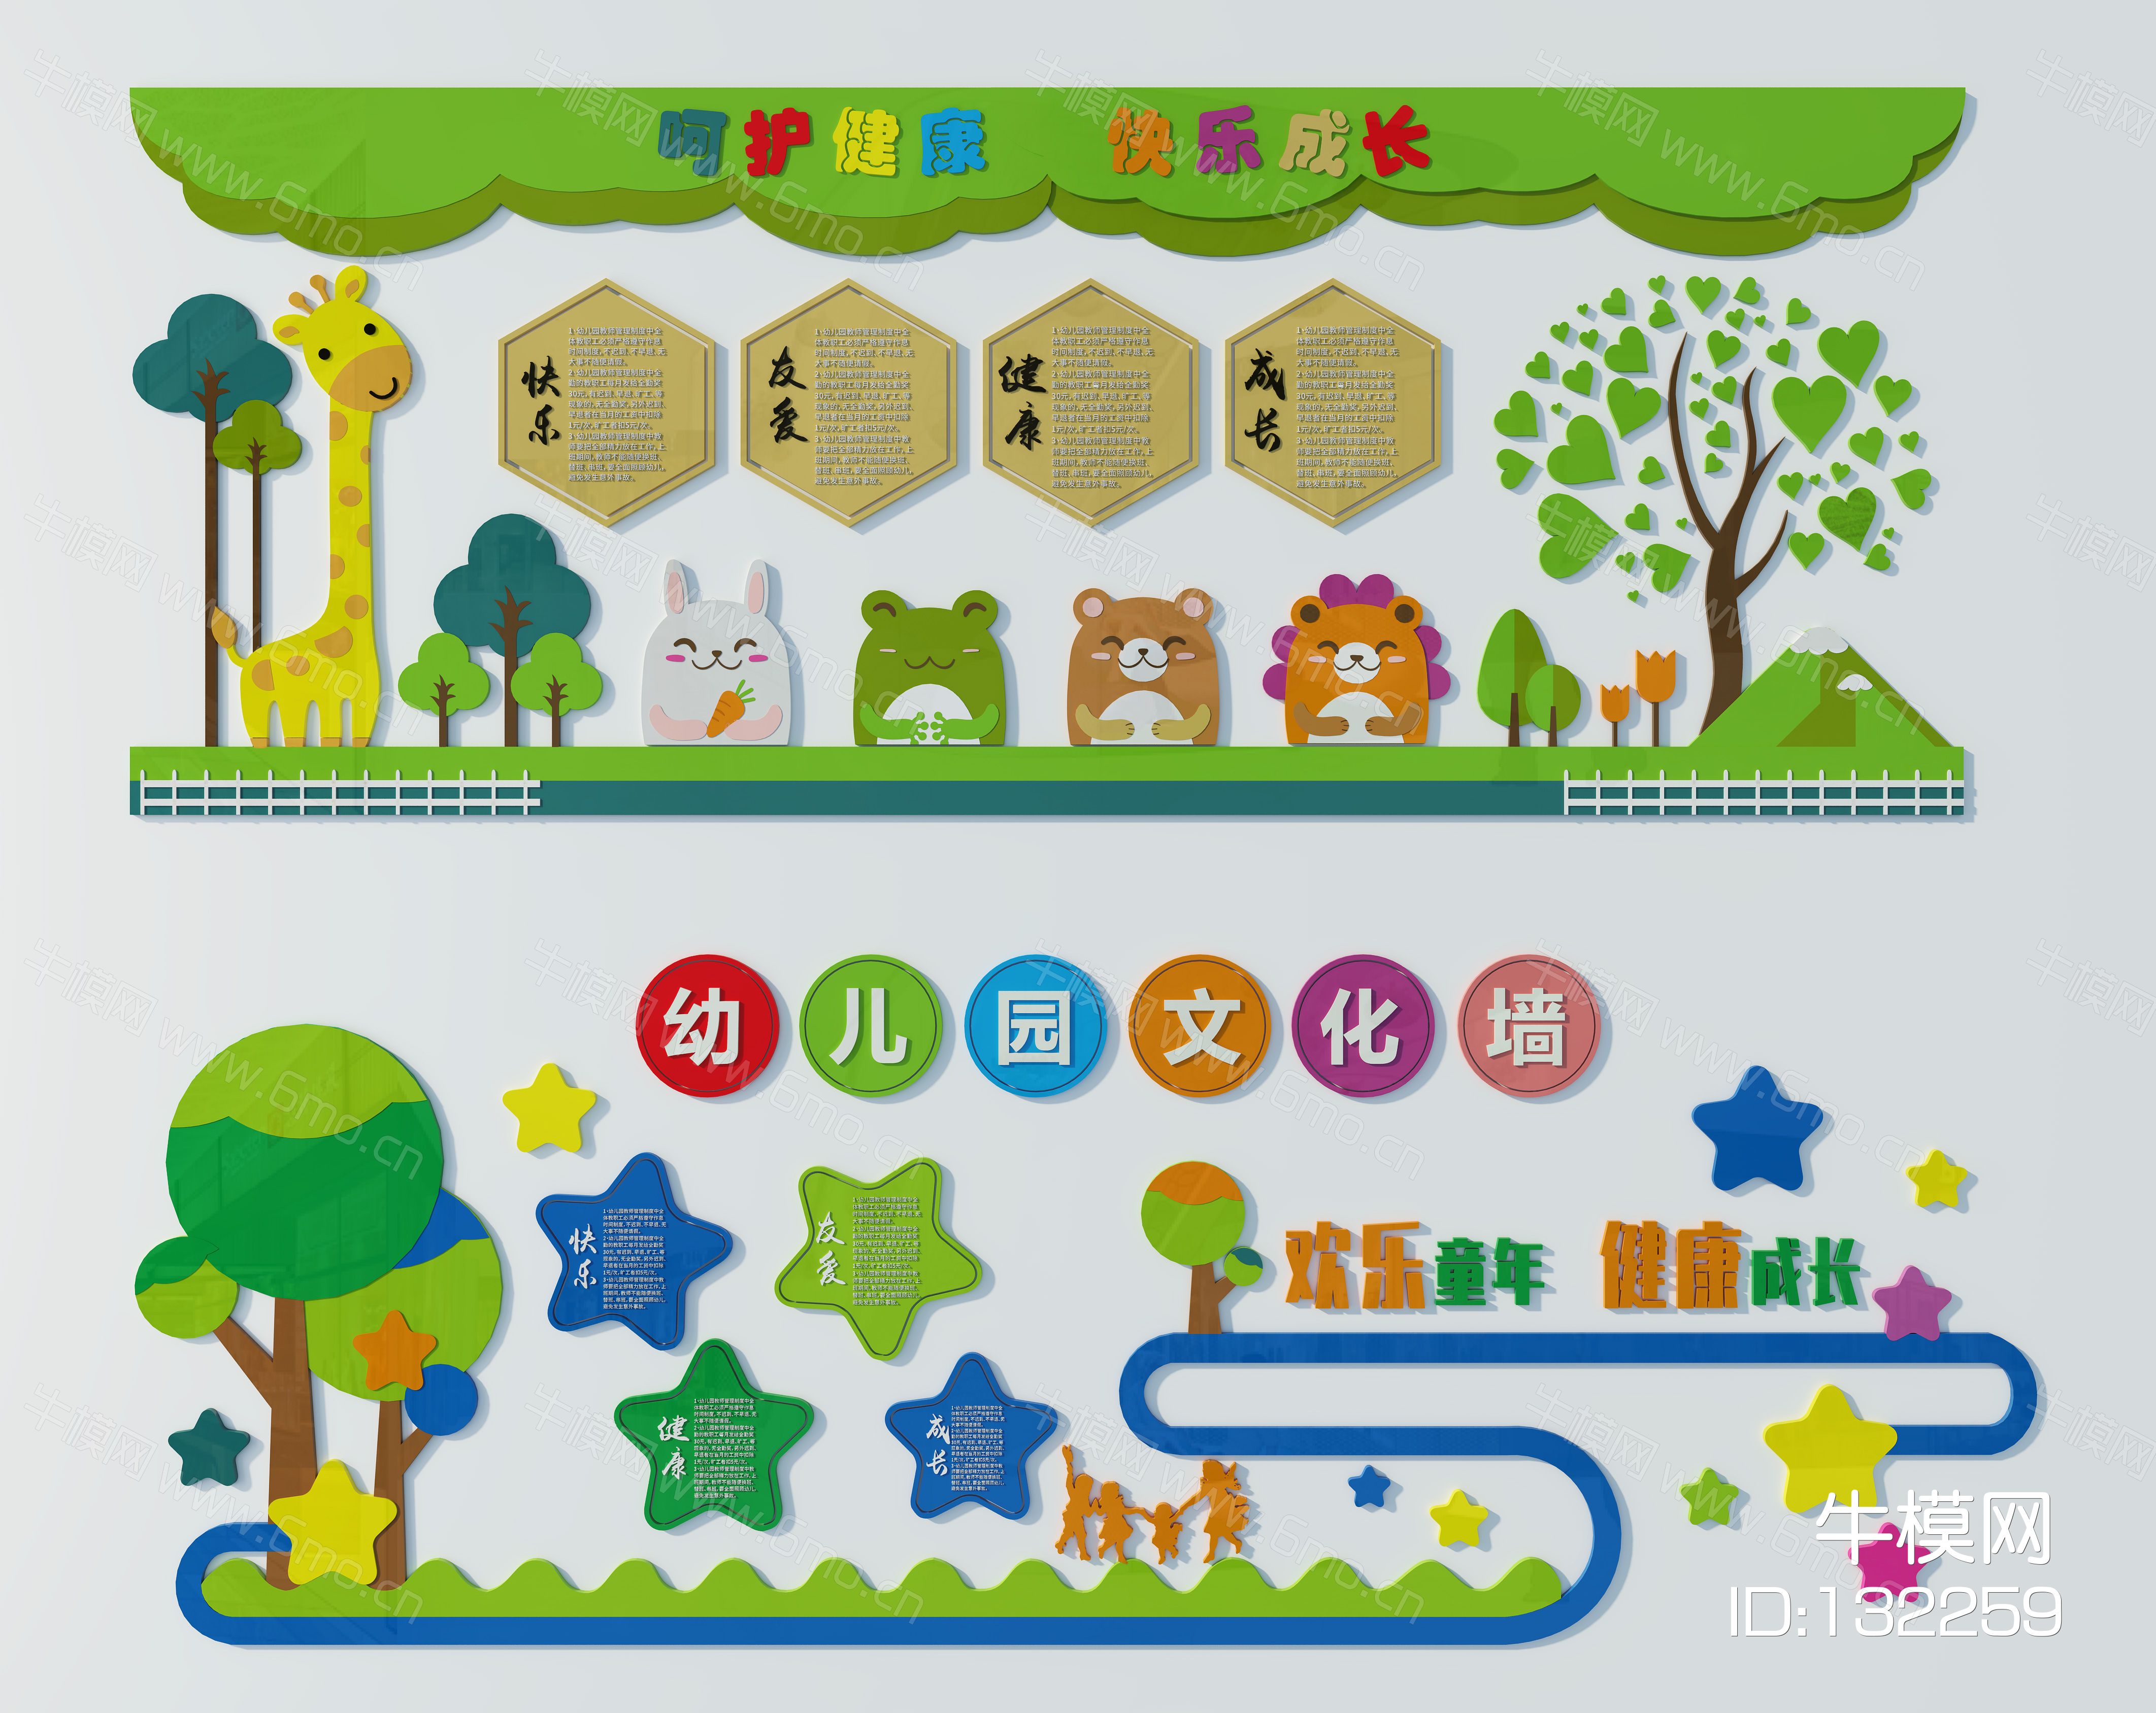 的现代背景墙饰效果图素材免费下载,本作品主题是幼儿园文化墙3d模型